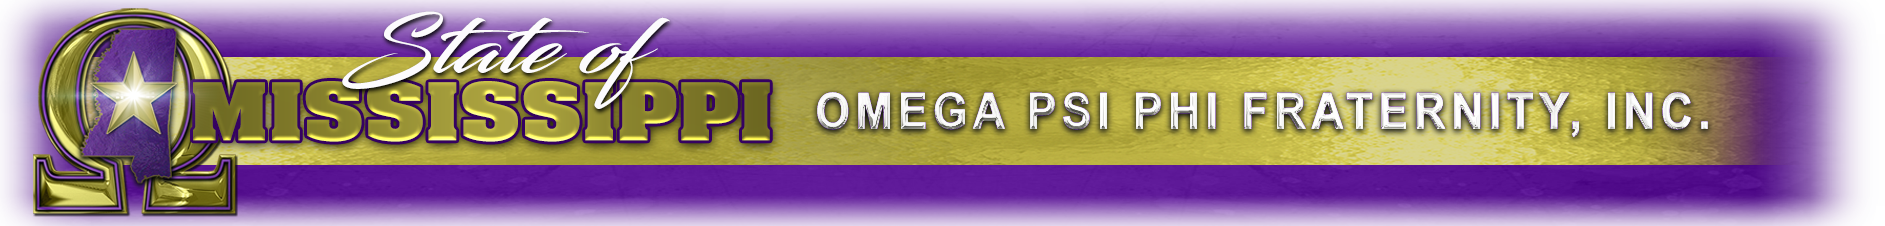 Omega Psi Phi Mississippi Logo